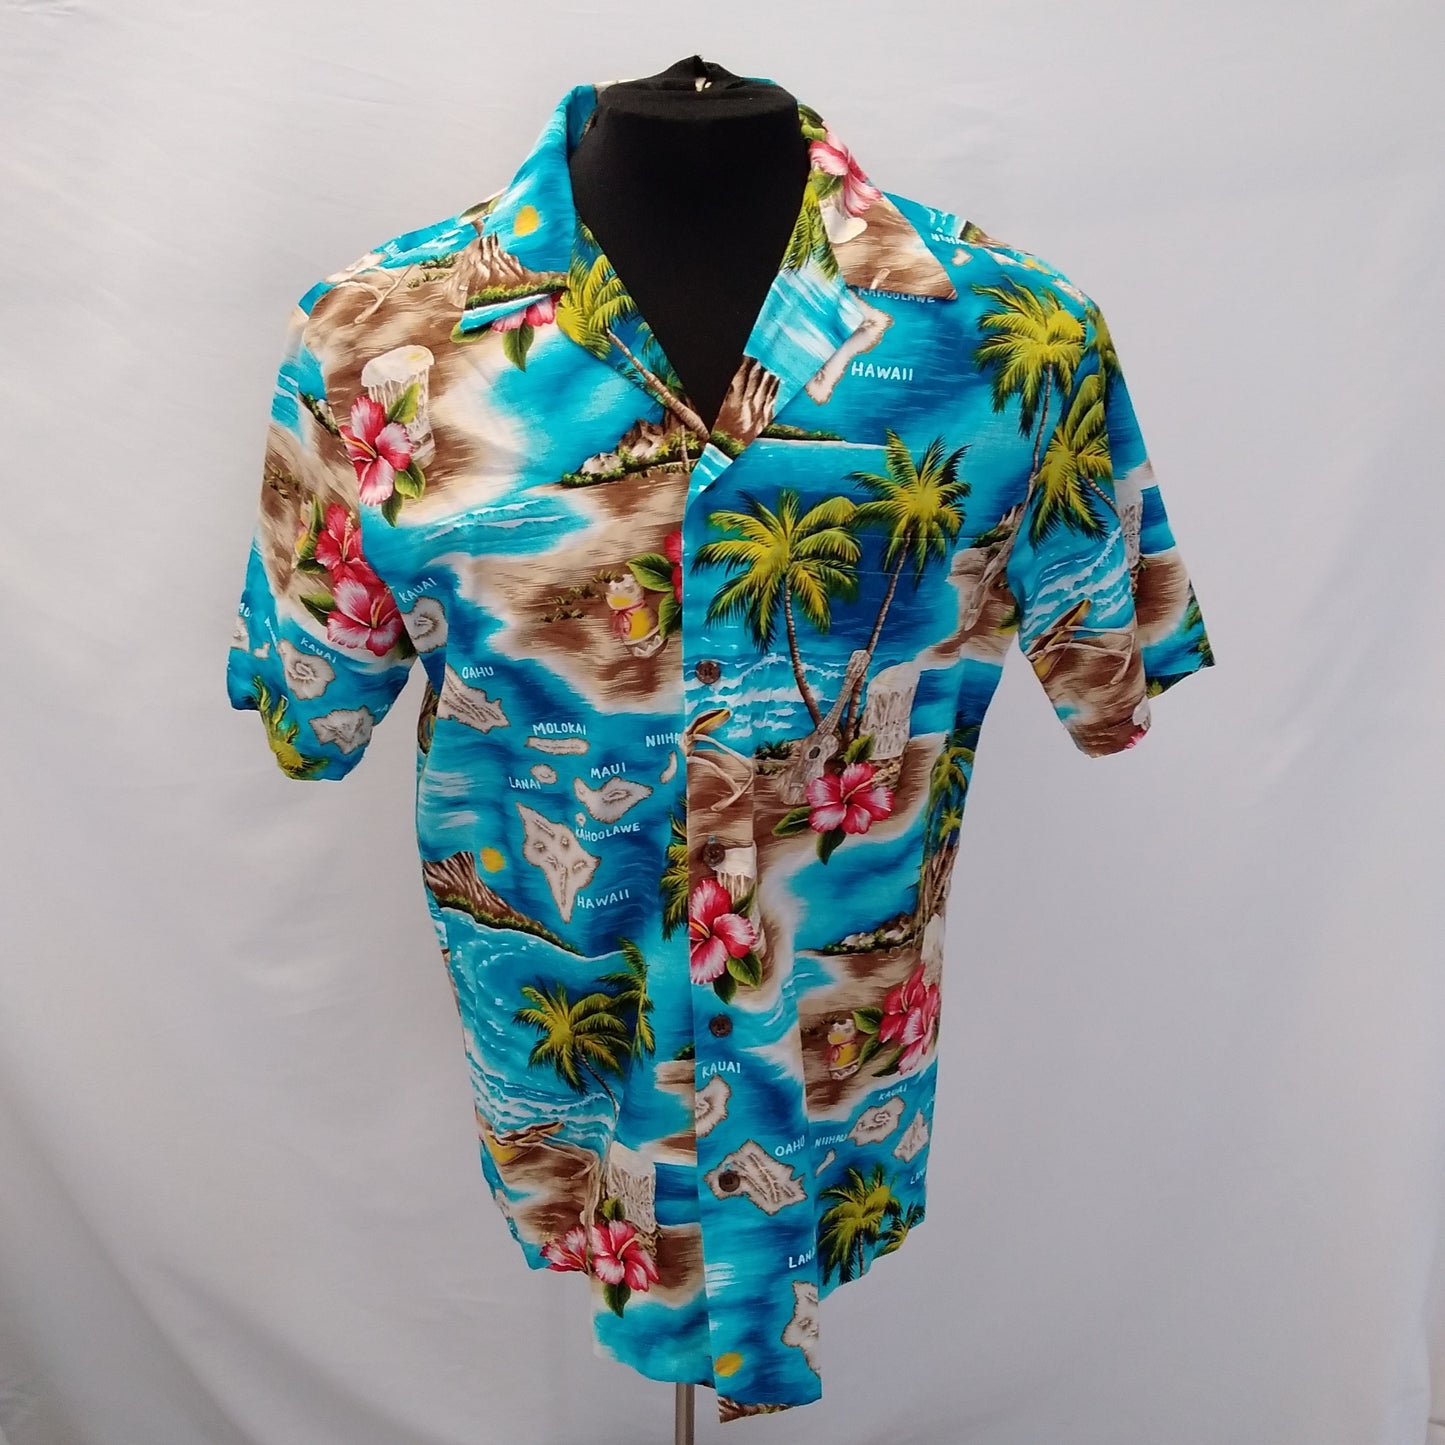 RJC Hawaiian Beach Short Sleeve Hawaiian Shirt - M